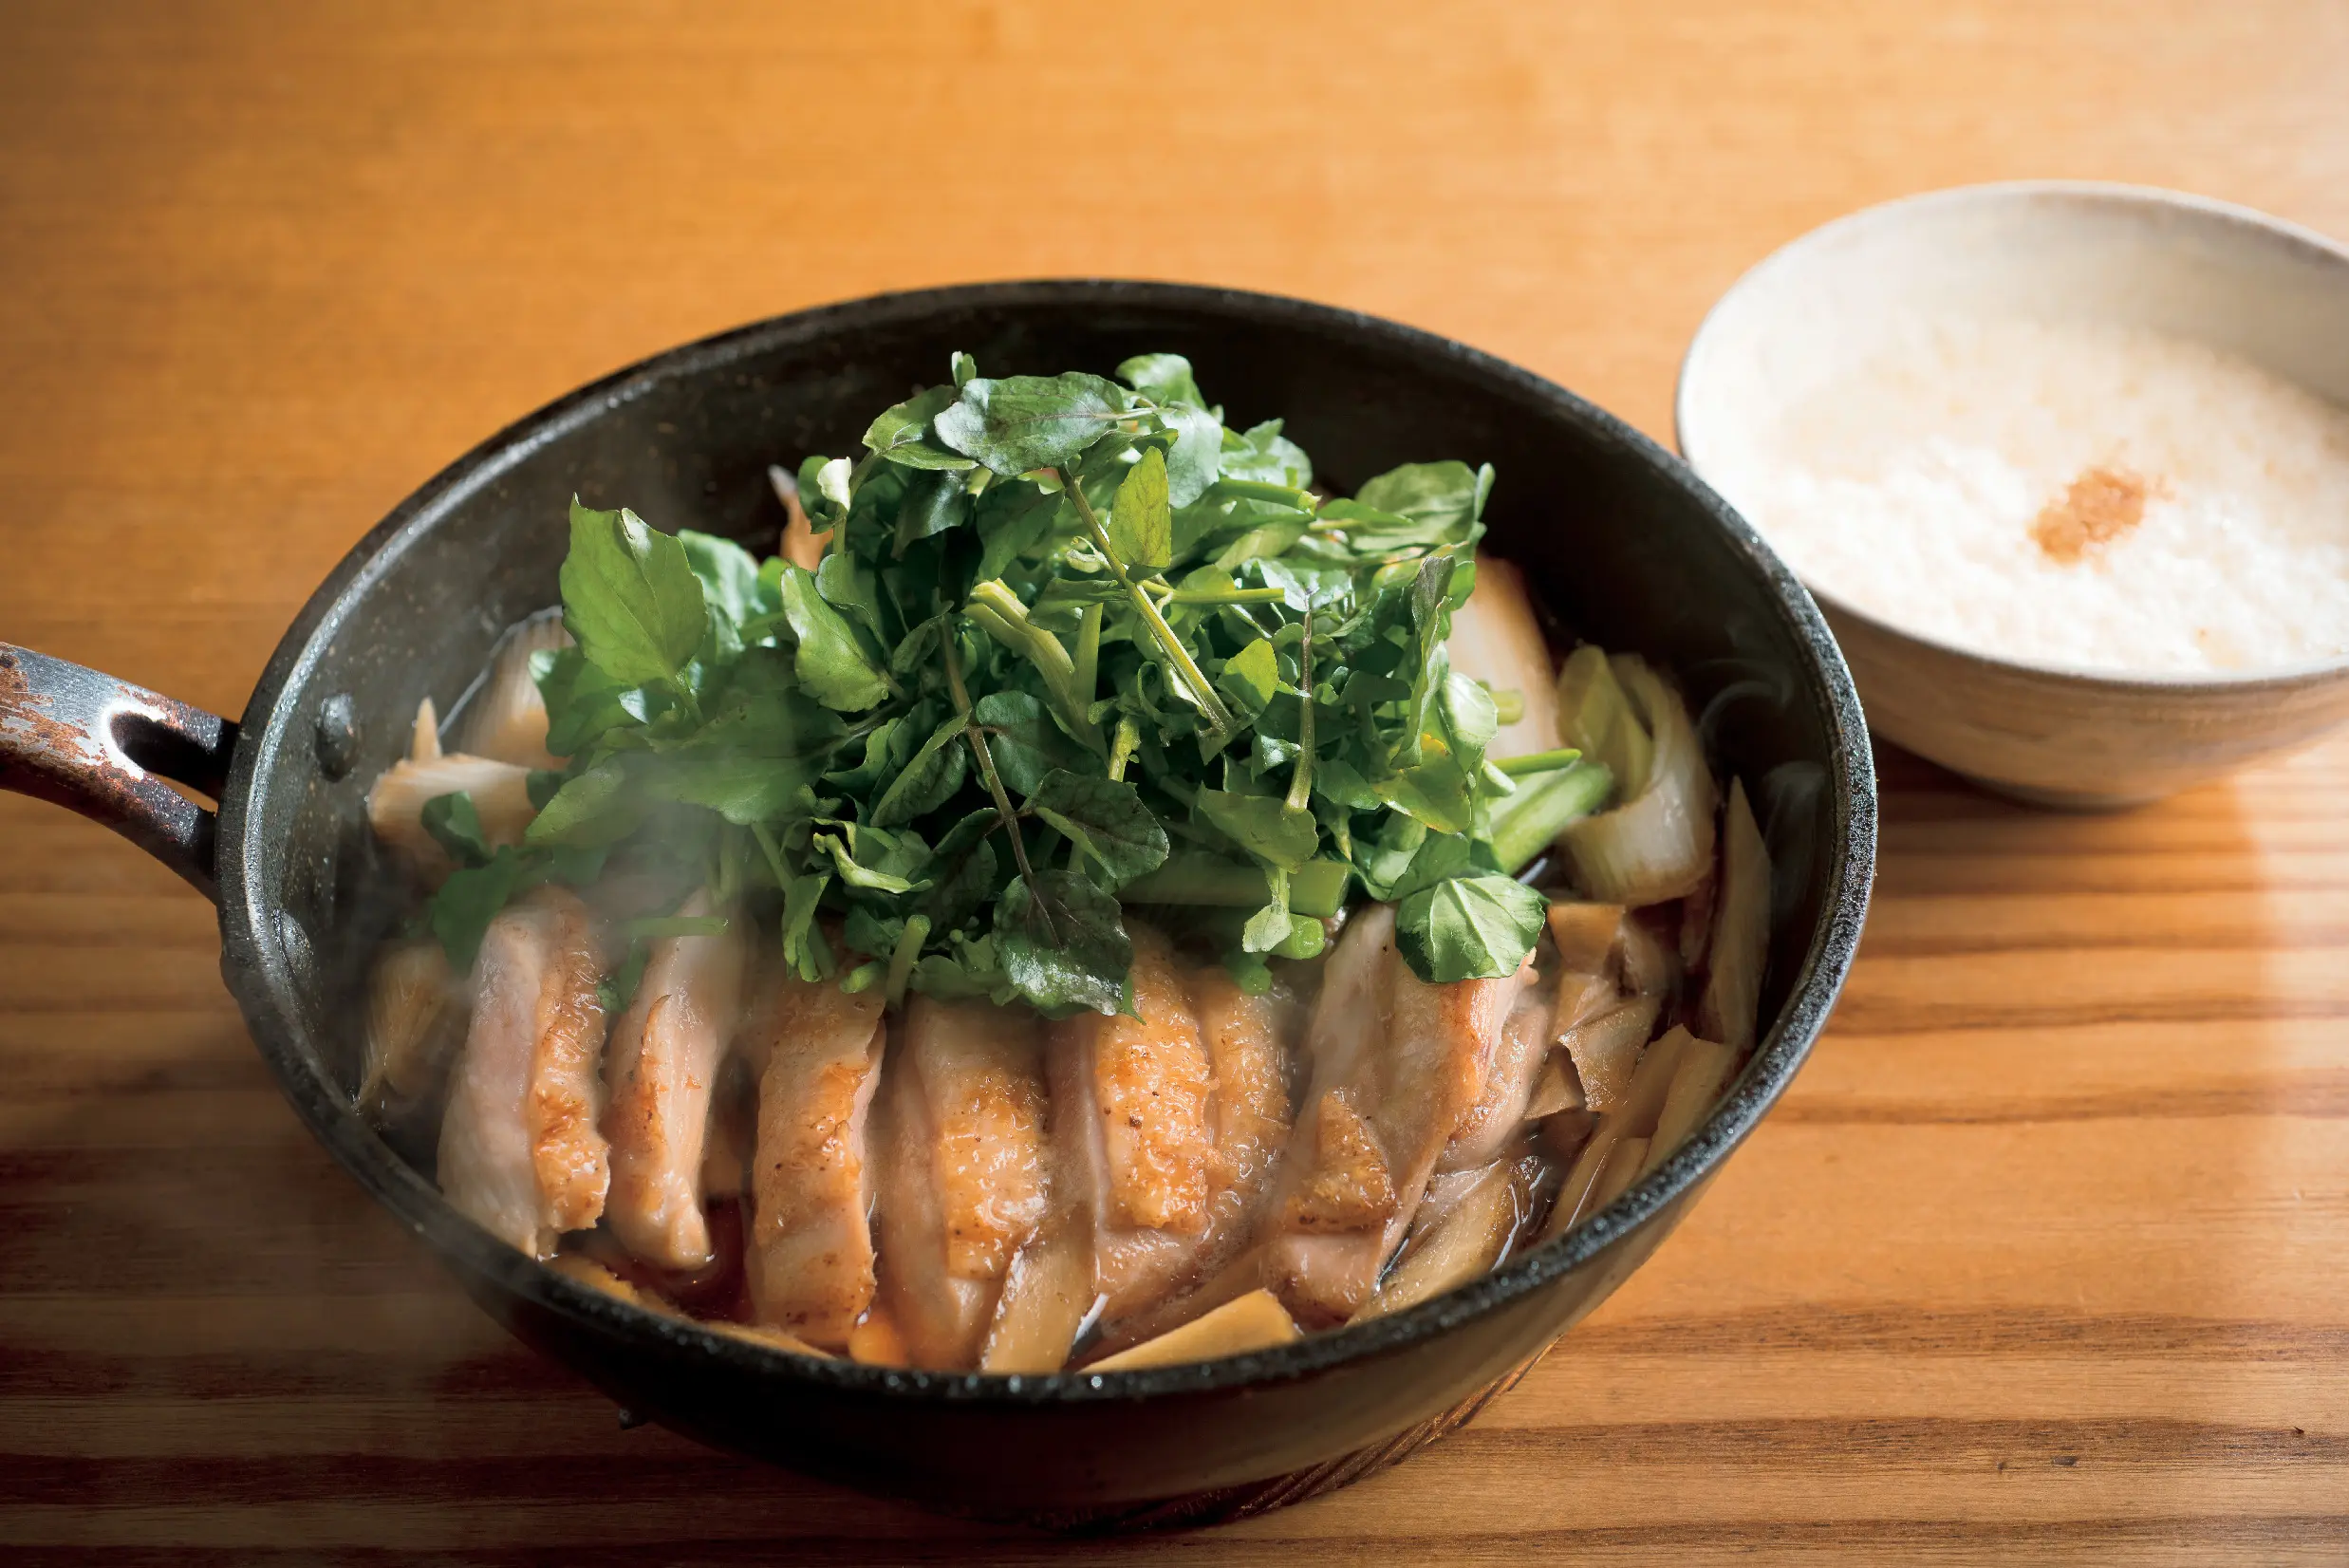 渋谷『高太郎』店主 林 高太郎の鶏肉とクレソンのすき焼き風鍋レシピ